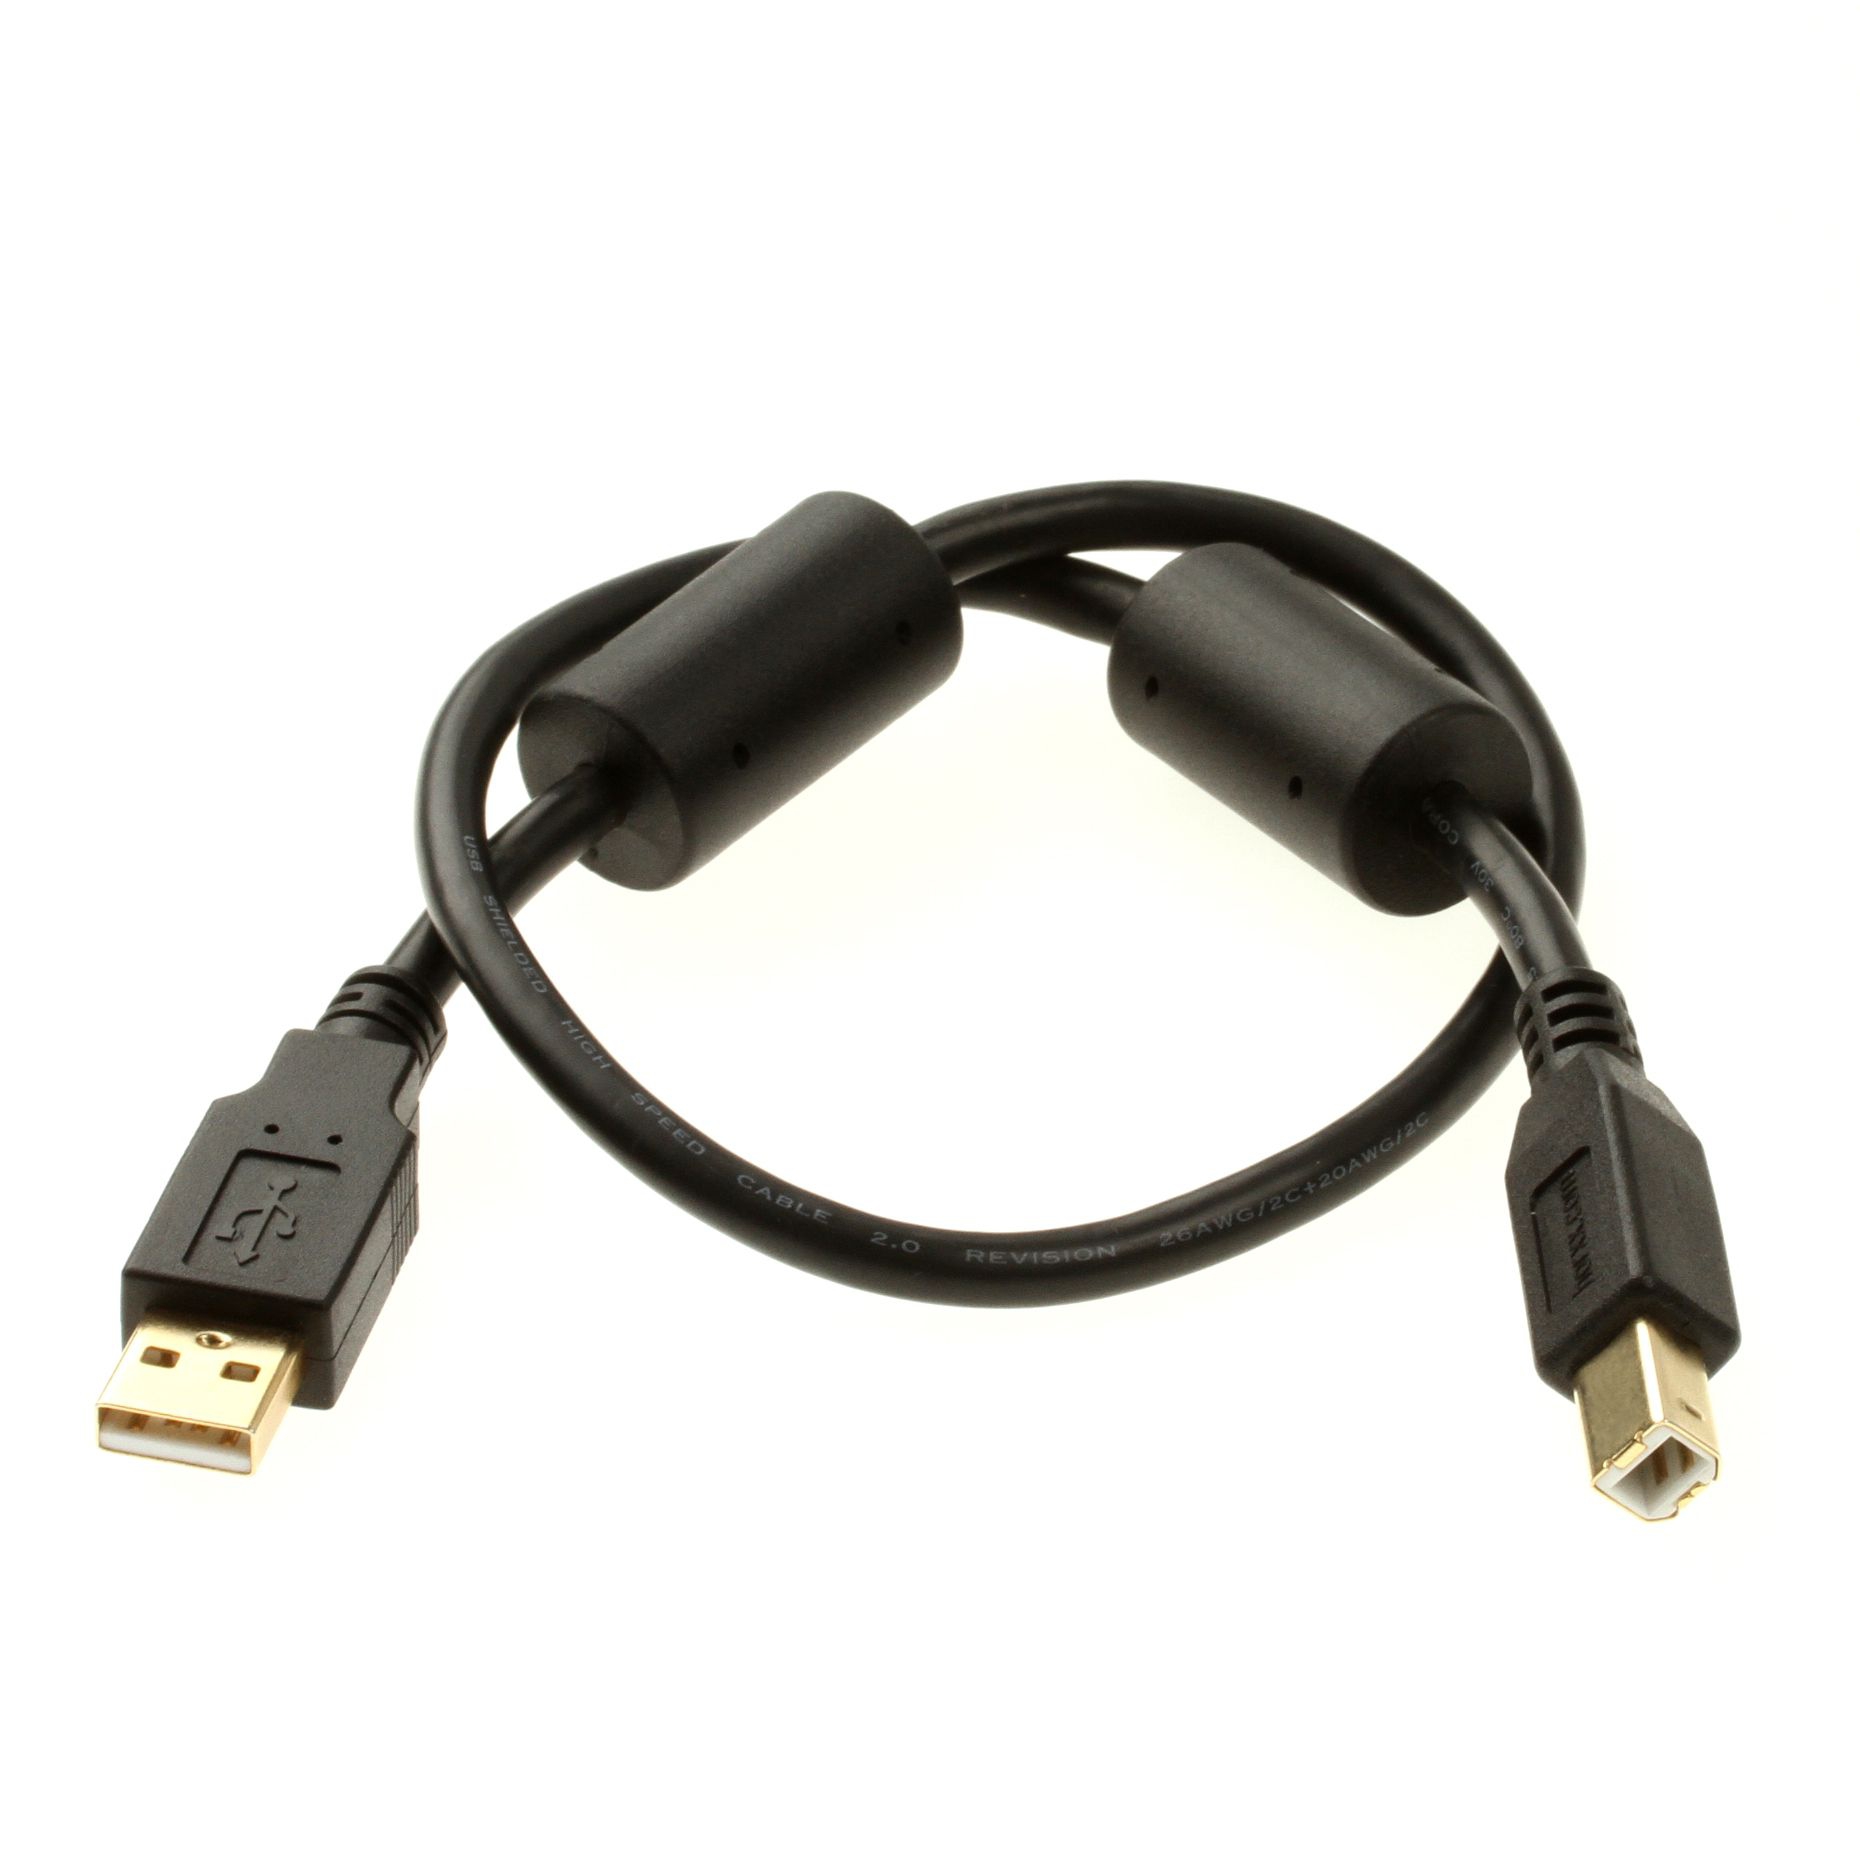 USB 2.0 Kabel mit 2 Ferritkernen in PREMIUM+ Industriequalität 30cm